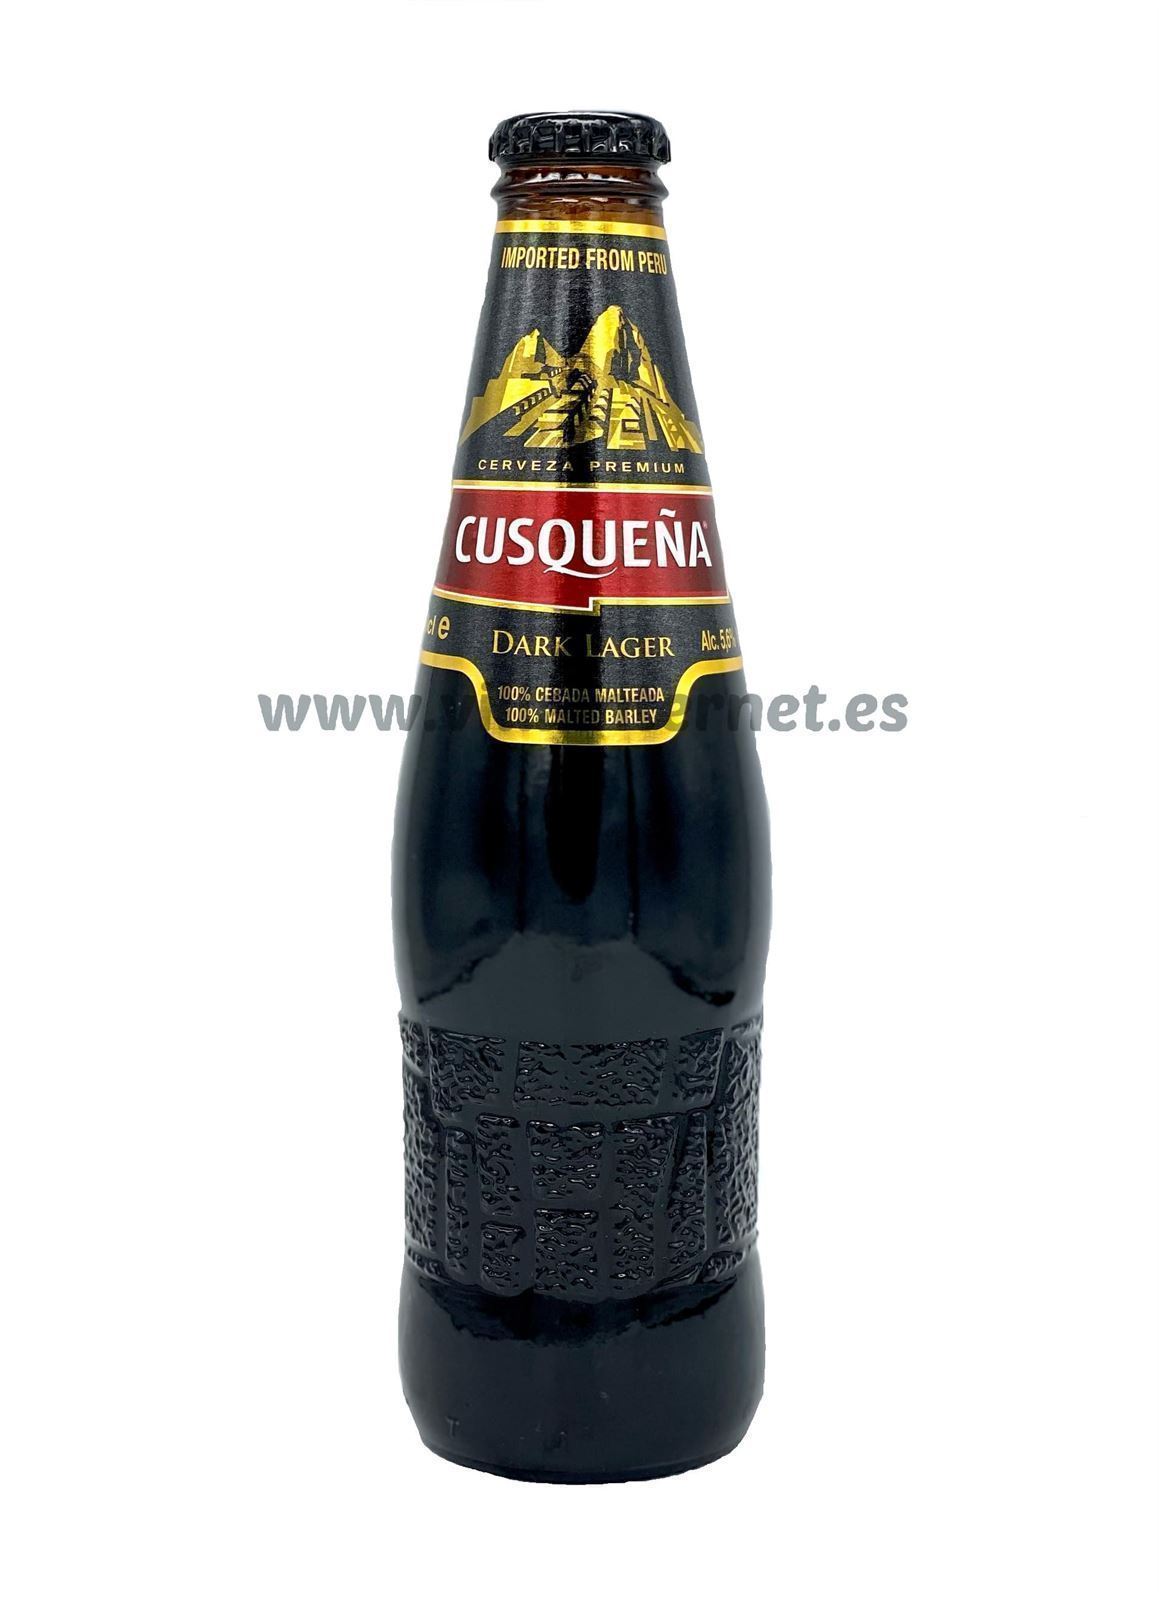 Cerveza Cusqueña dark lager 330ml - Imagen 1